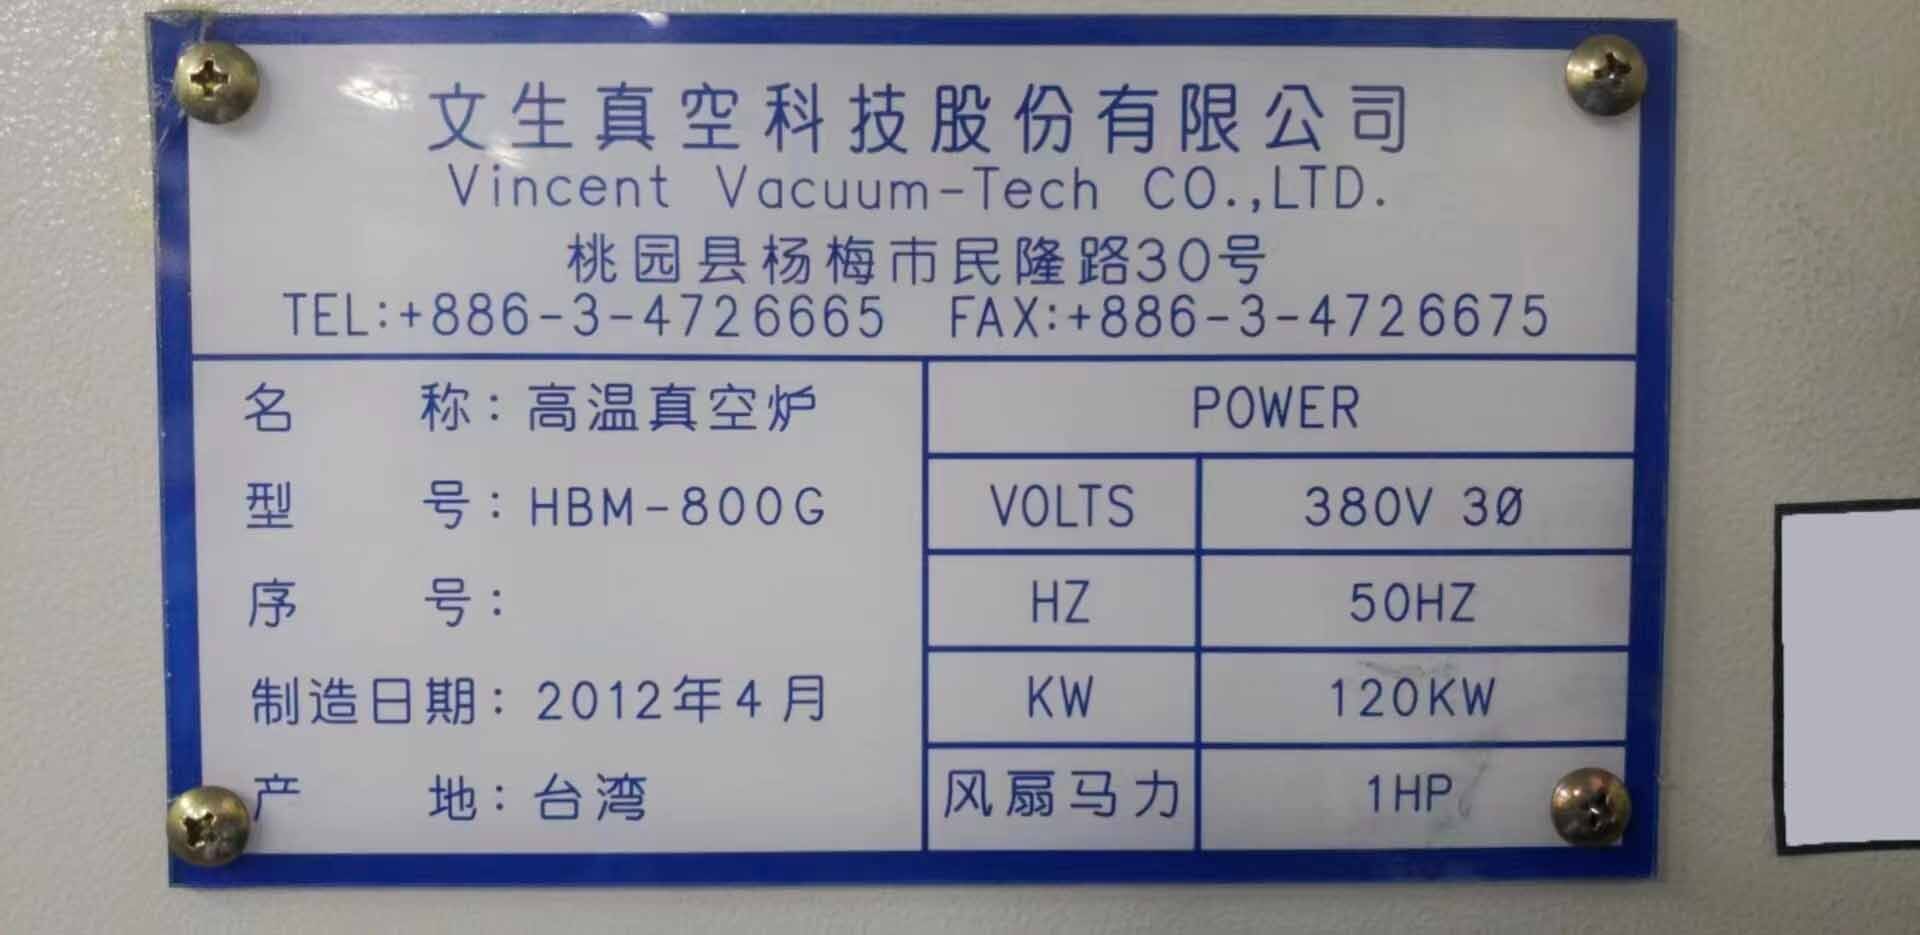 사진 사용됨 VINCENT VACUUM TECH HBM-800G 판매용